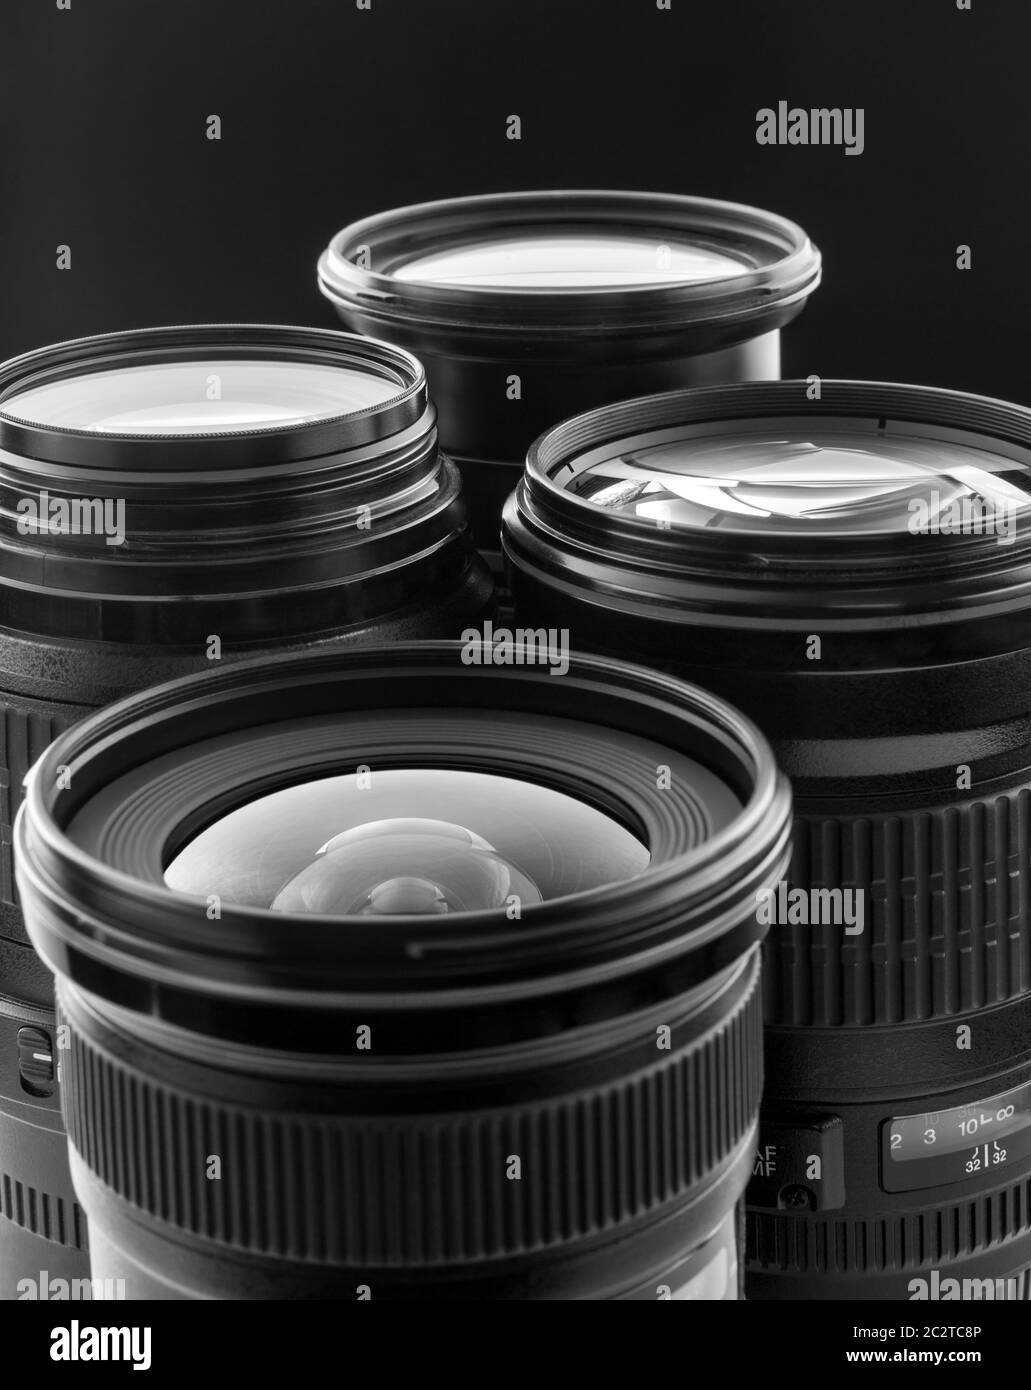 Four digital camera lenses. Closeup view Stock Photo